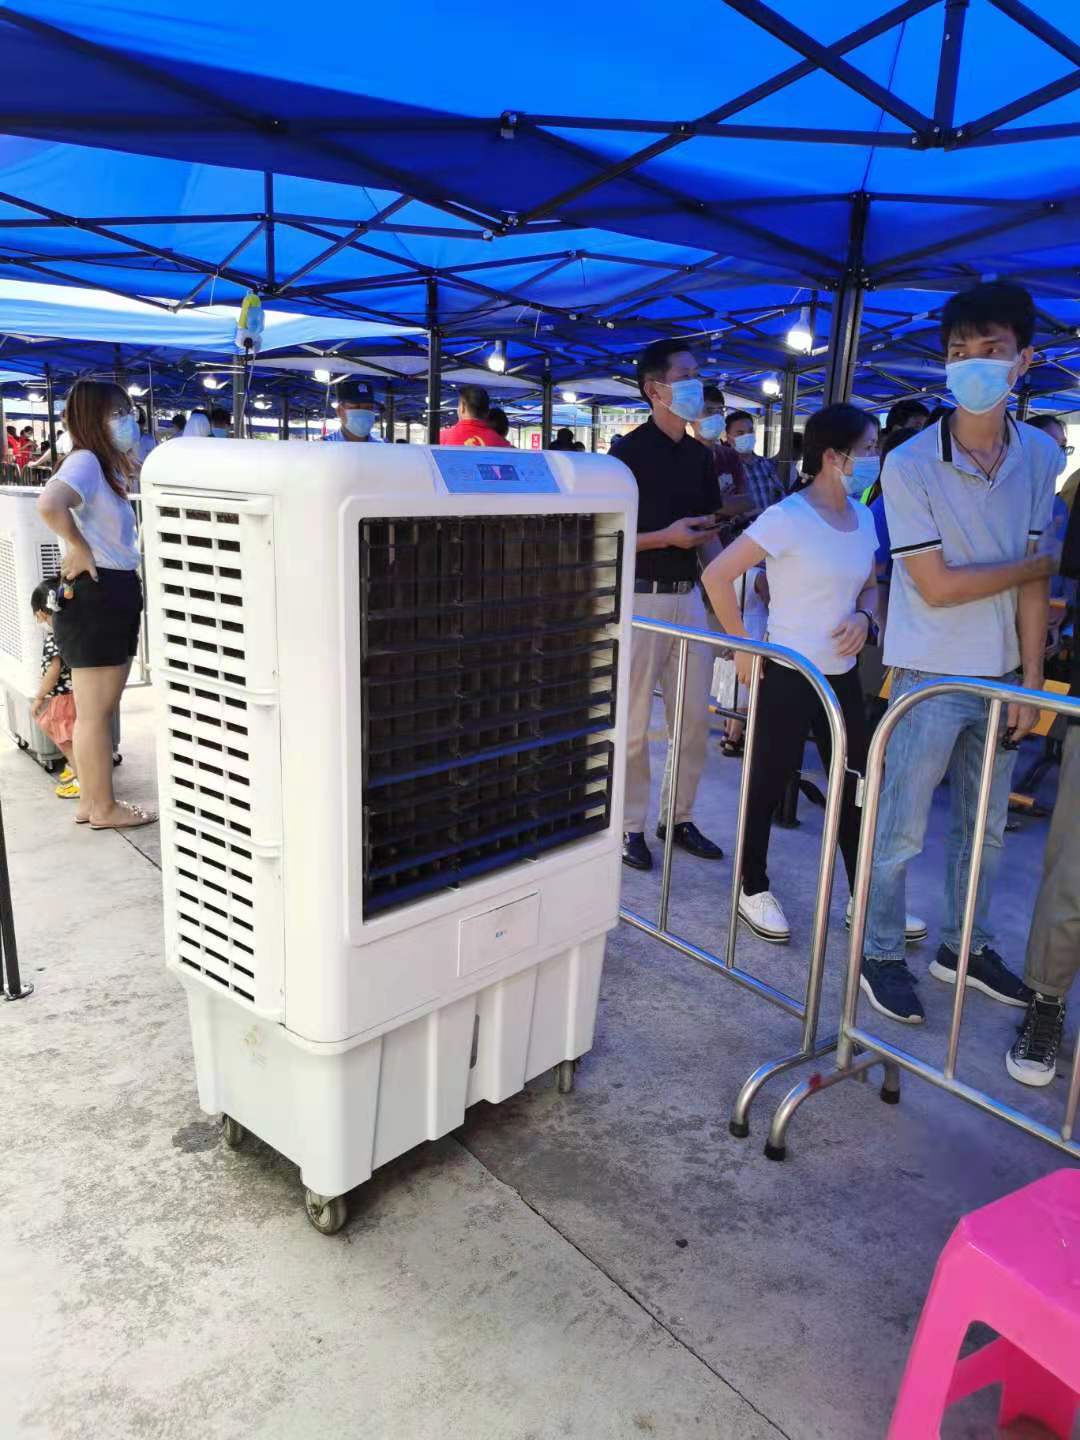 XIKOO เครื่องทำความเย็นด้วยอากาศ มอบความเย็นให้กับบุคลากรทางการแพทย์